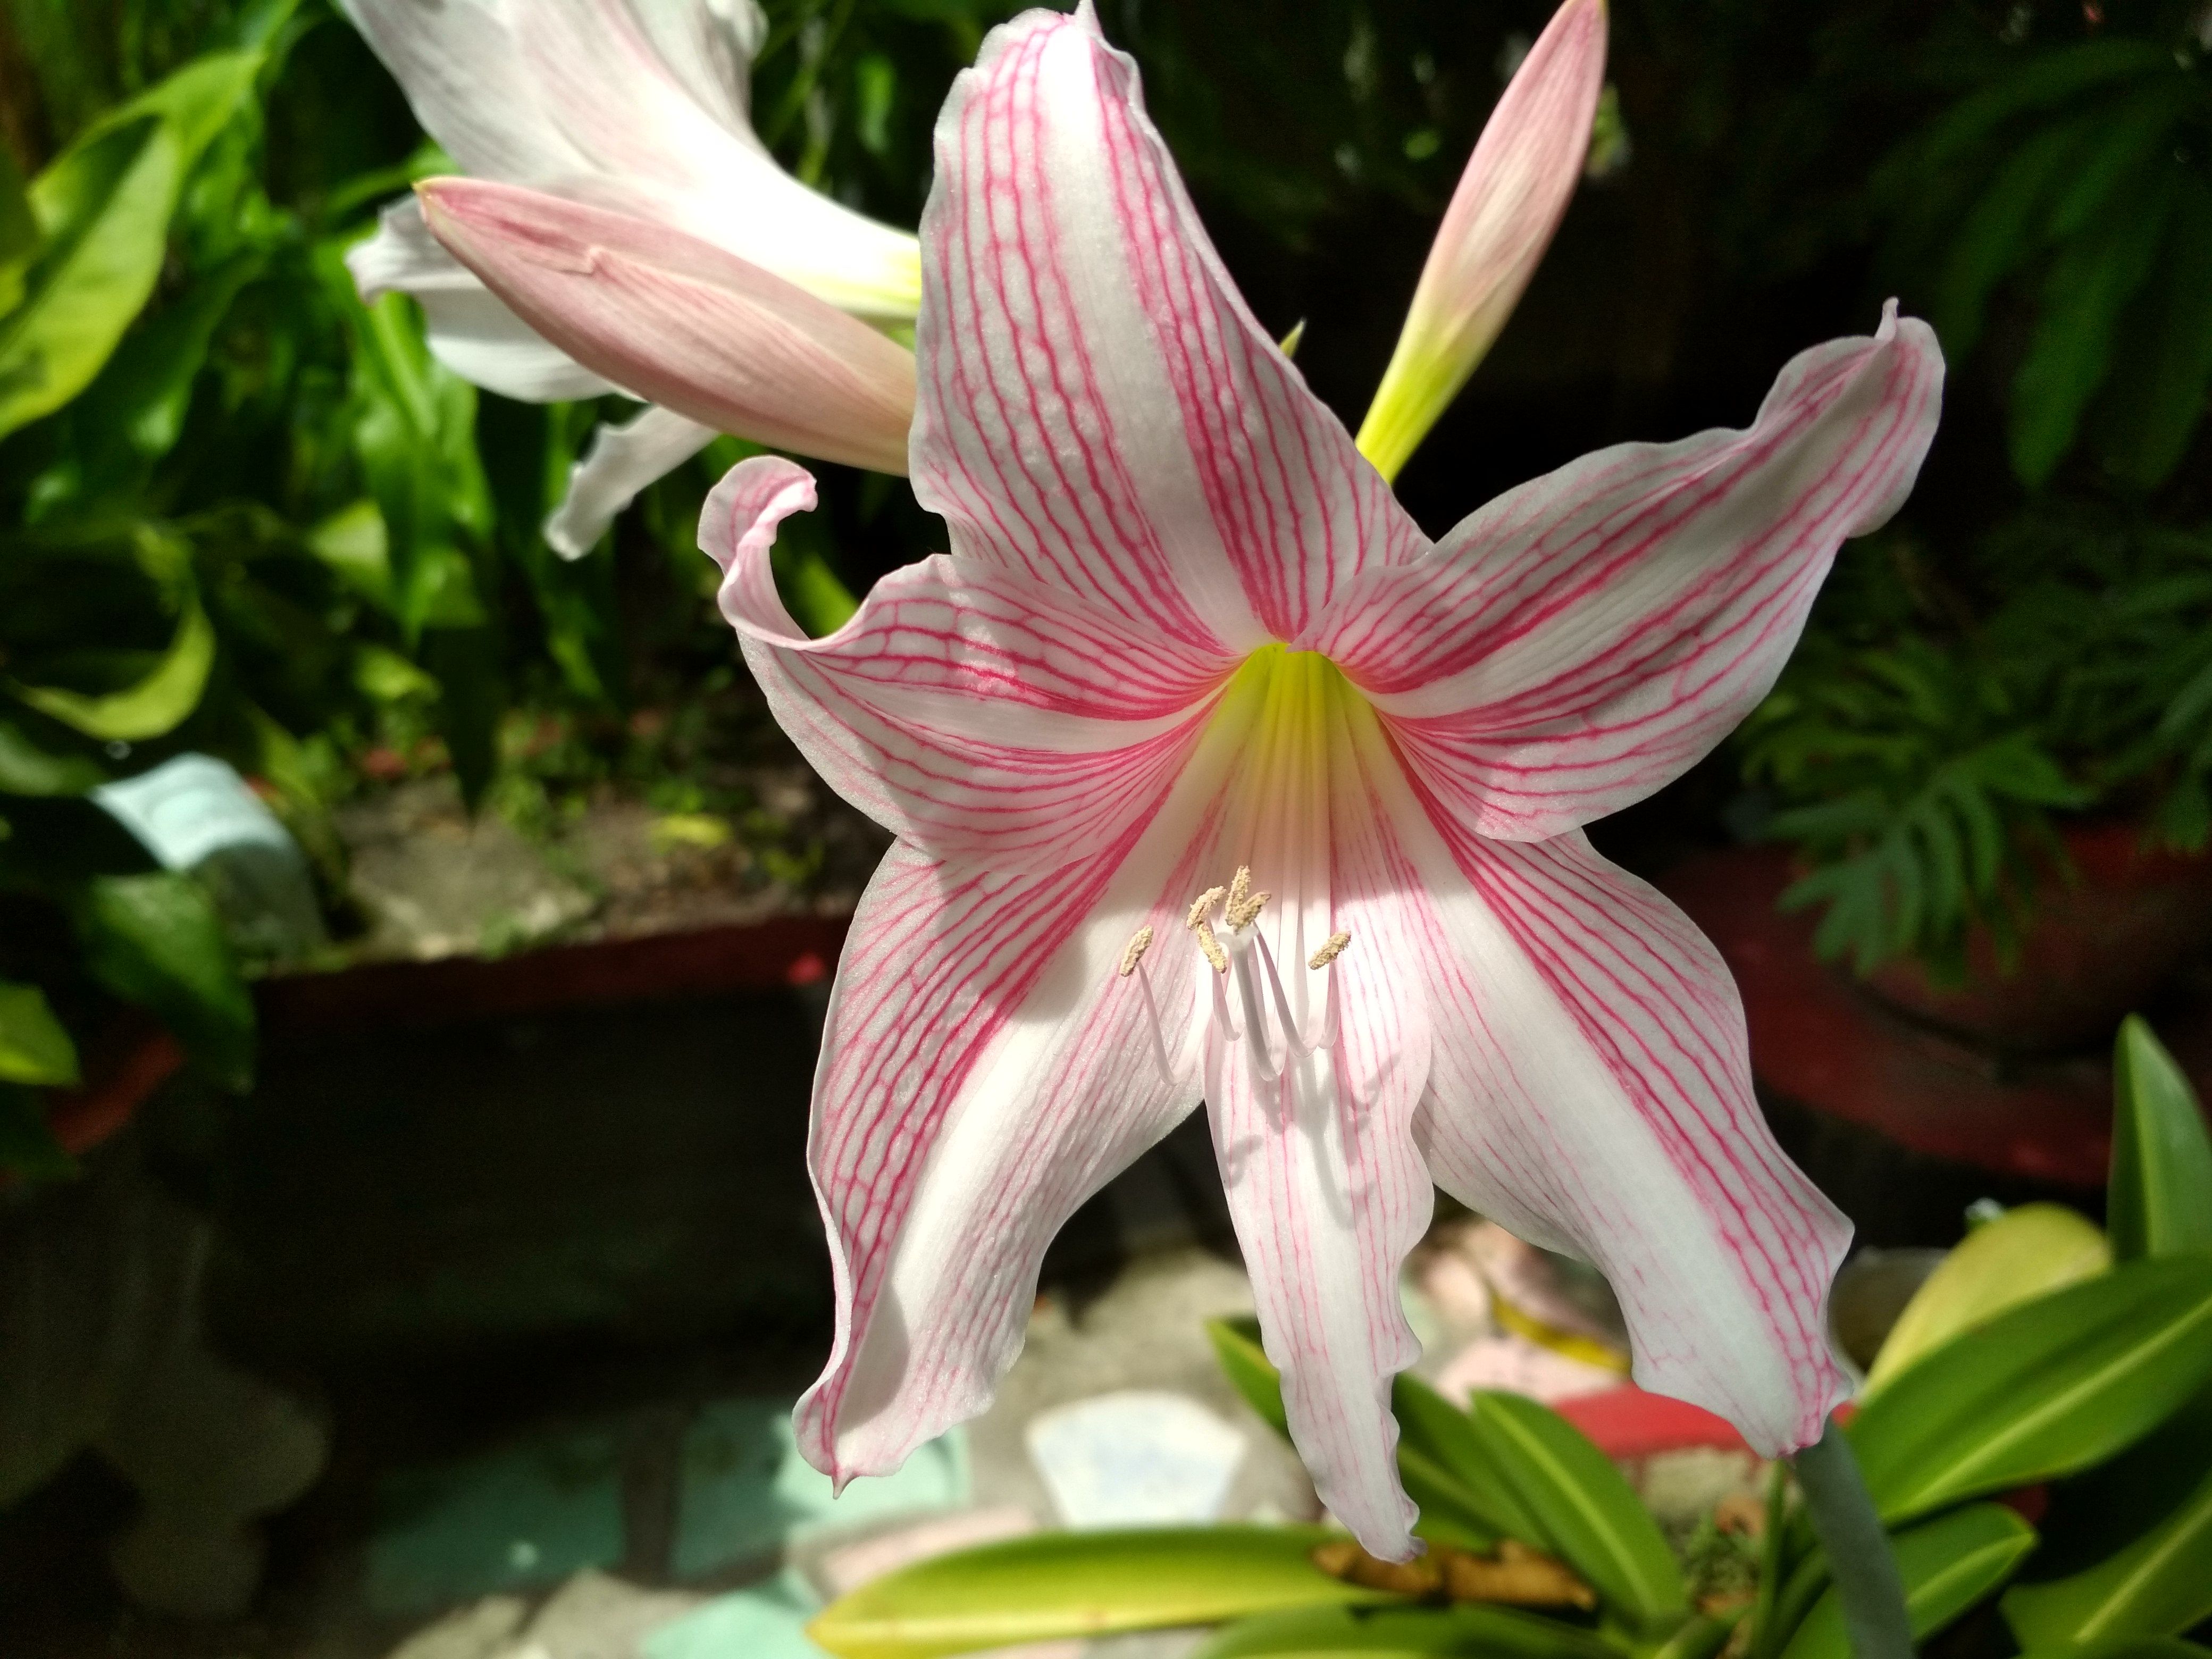 The Bakung Flower One In Nine 1 Poison 9 Helpful Bunga Bakung One In Nine 1 Beracun 9 Bermamfaat 2language Eng Ind Steemit